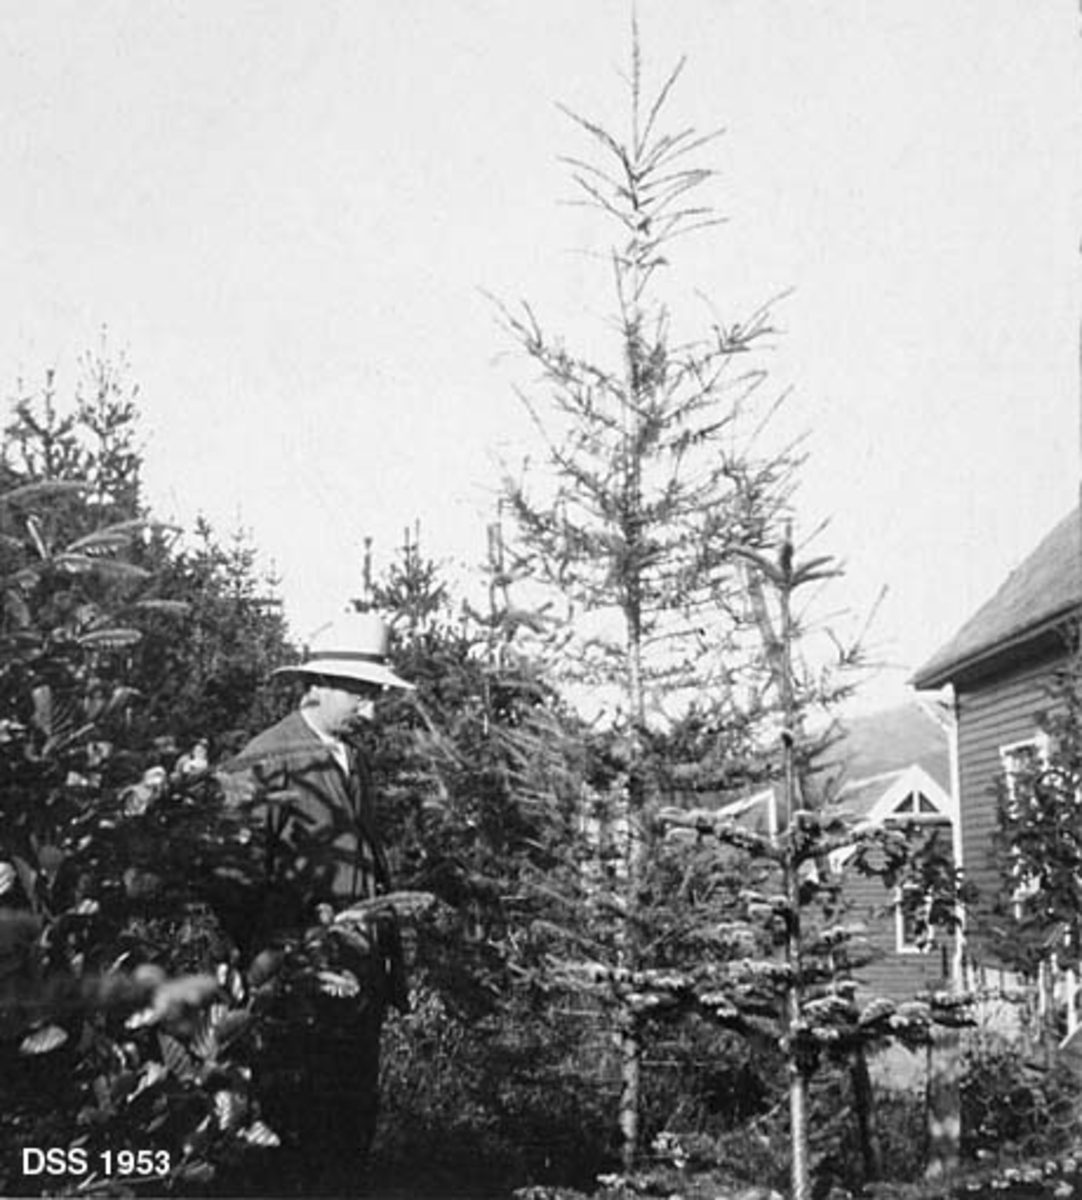 Fra Ekhaug planteskole ved Os i Hordaland.  Planteskolestyrer Hans M. Skinstad (1878-1956) står i et 10 år gammelt plantet bestand av gran og lerketrær.  Skinstad er iført dress og lys hatt med svart bånd.  I bakgrunnen et to hus med horisontal panel. 